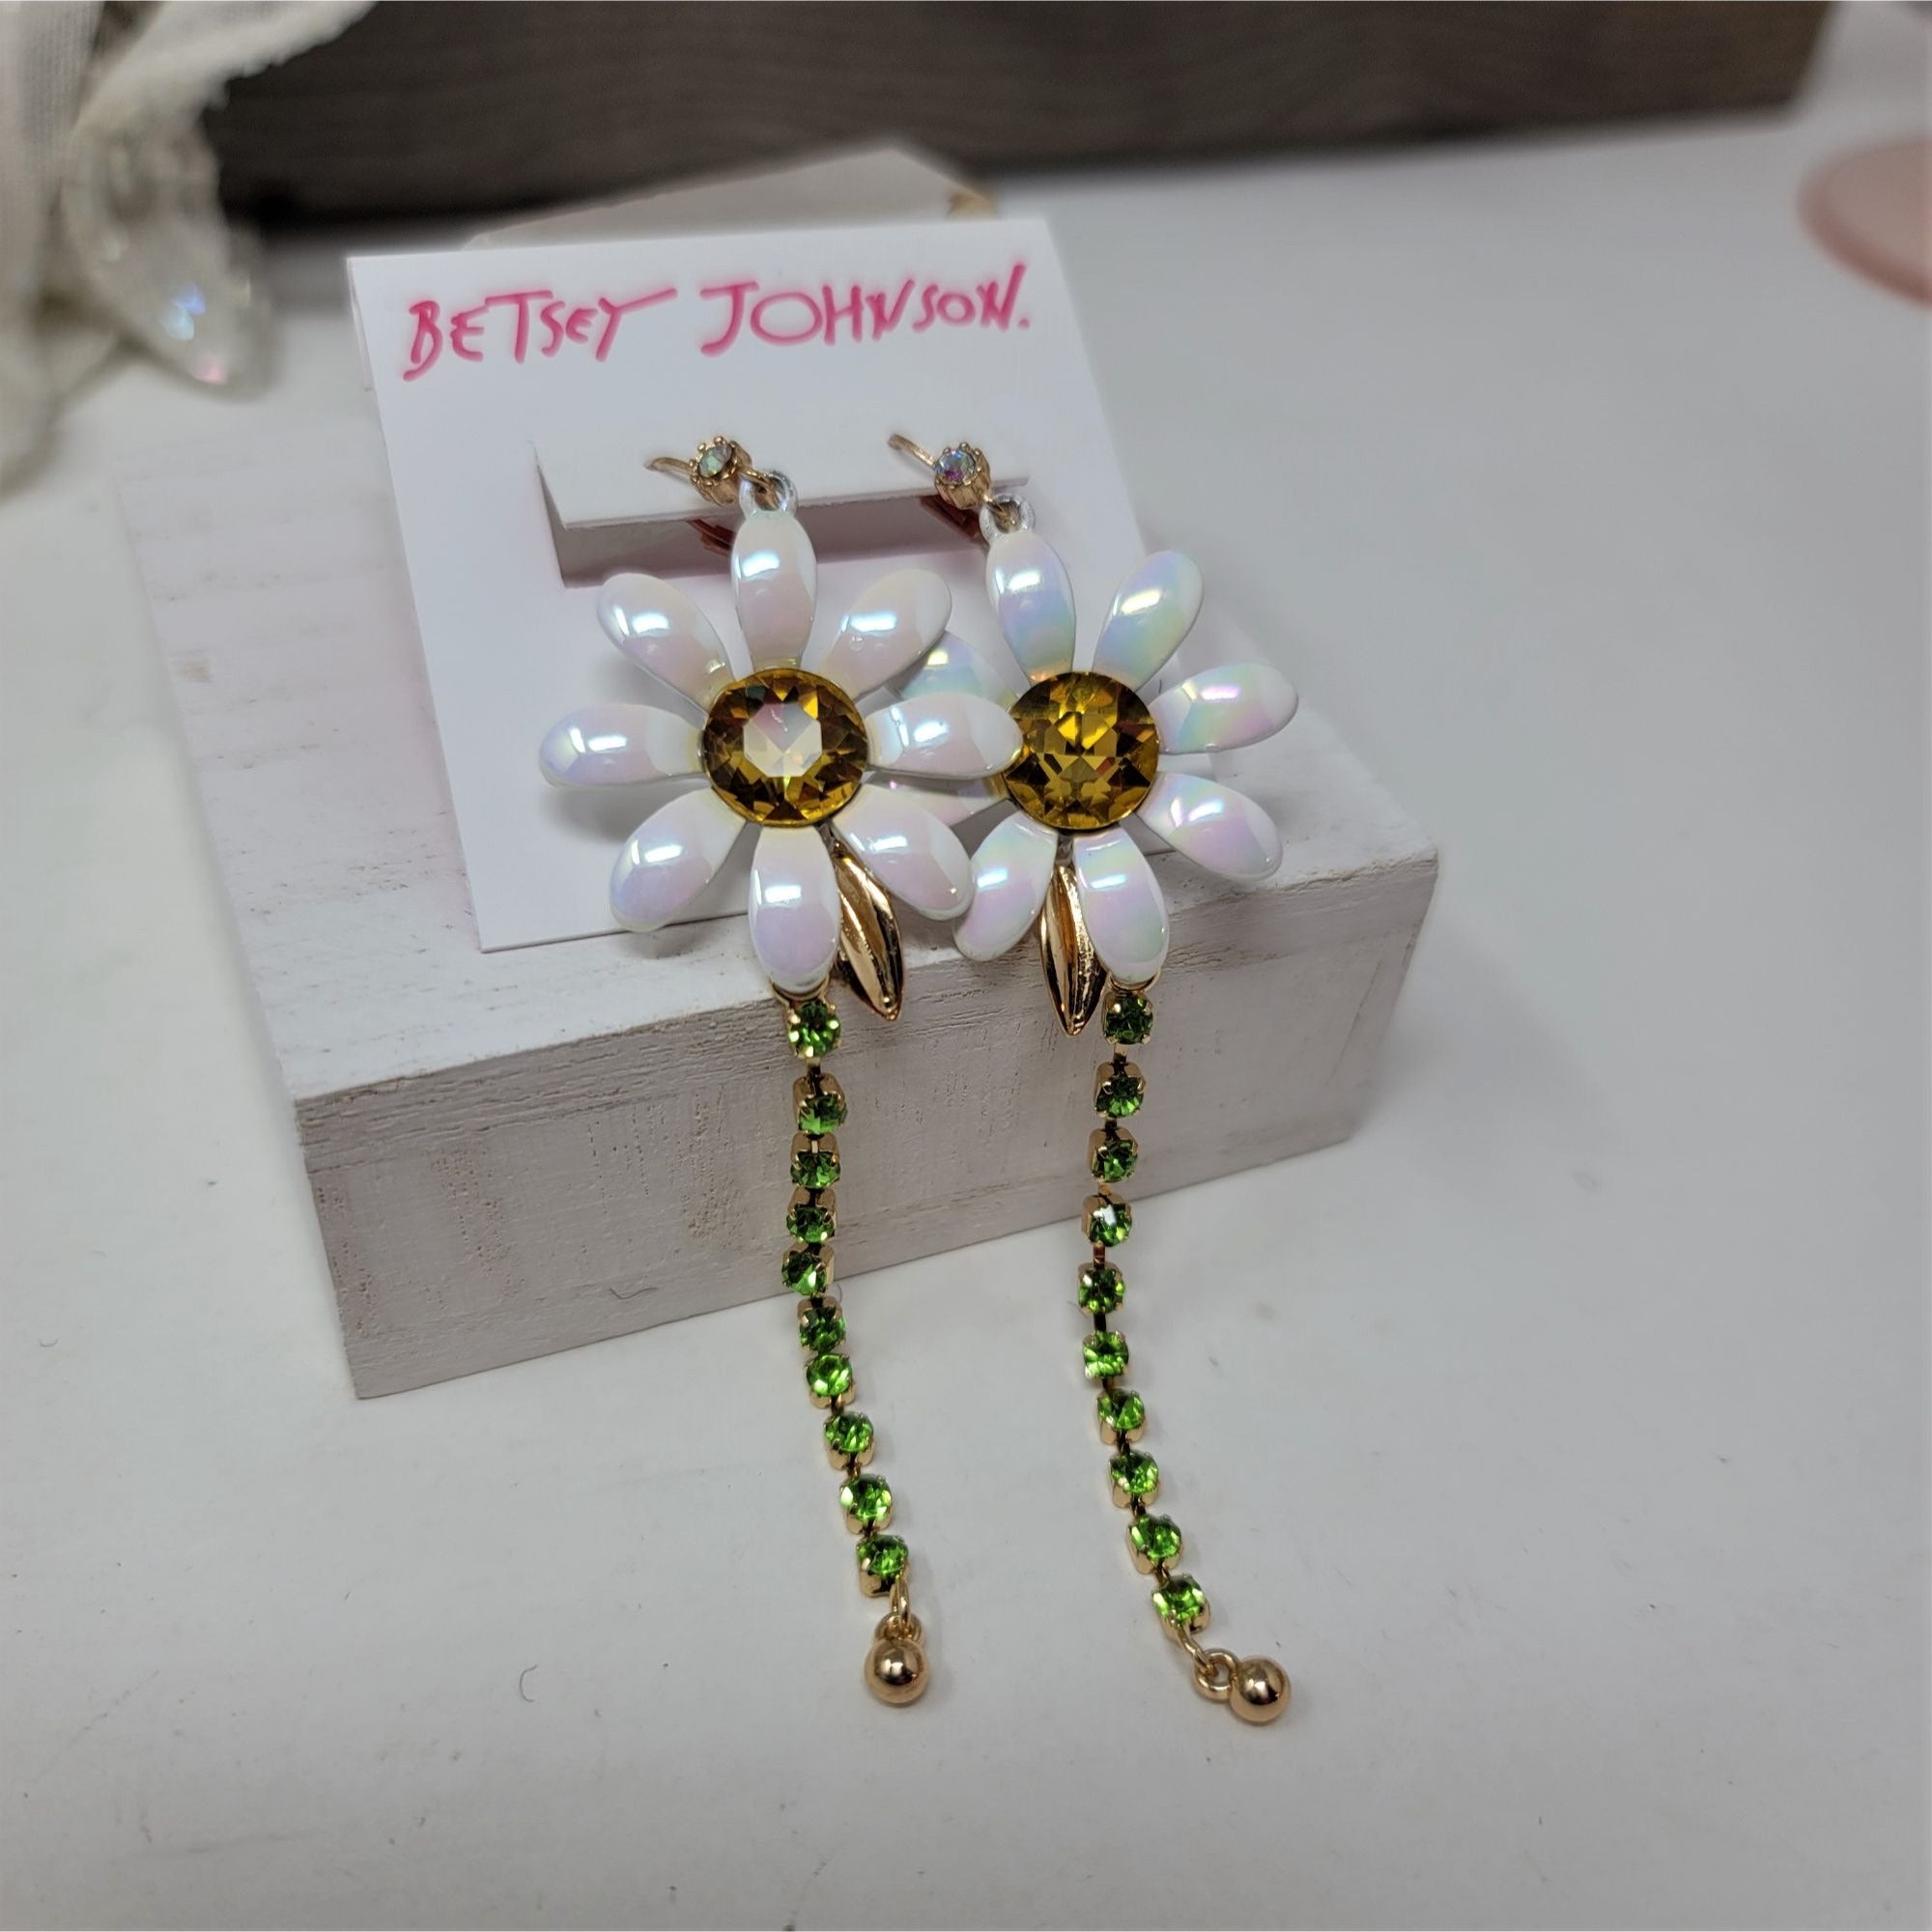 Betsey Johnson Enameled & Rhinestone Pierced Earrings Goldtone